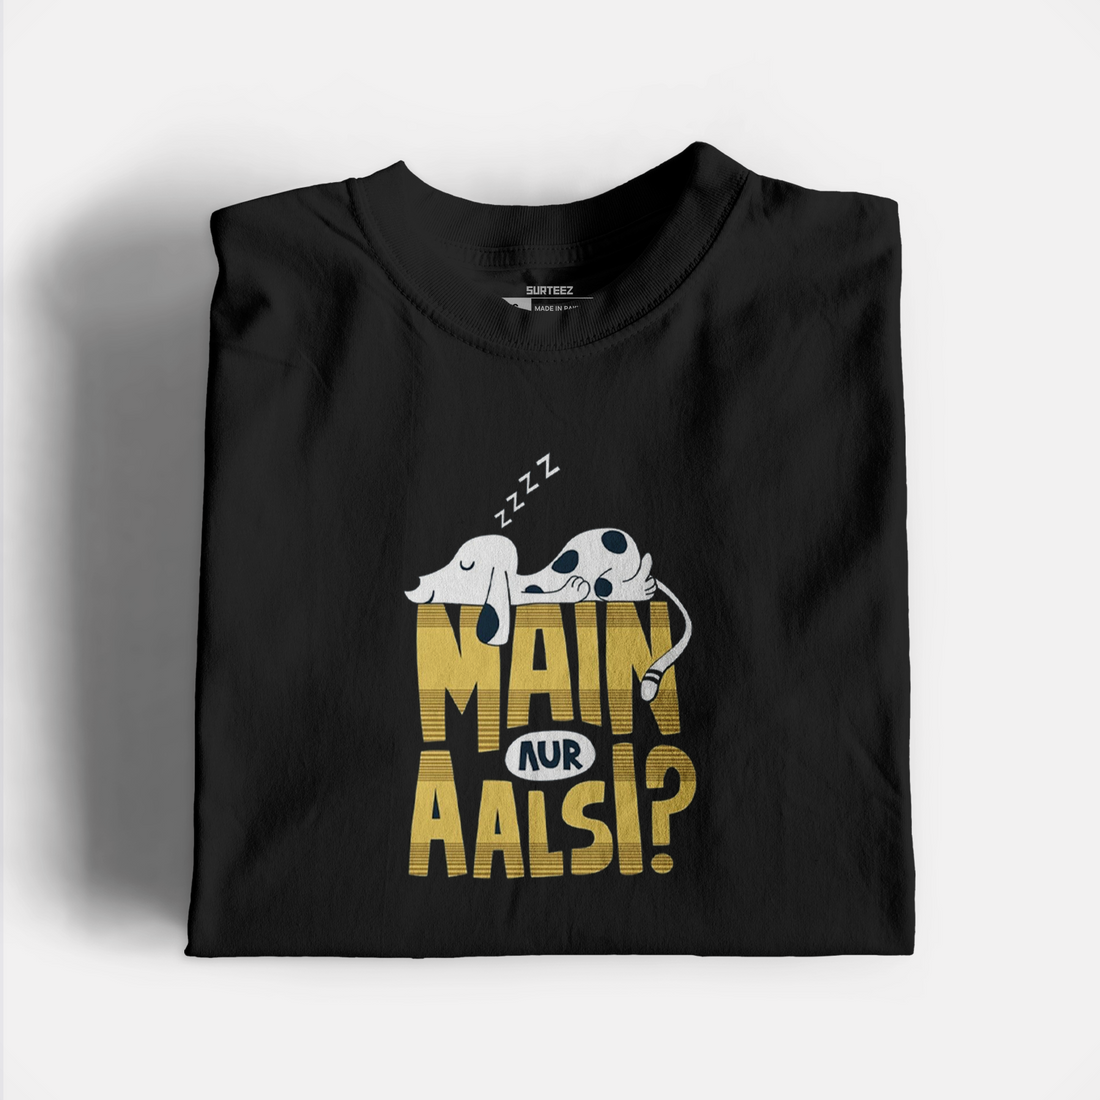 Aalsi Graphic Tshirt